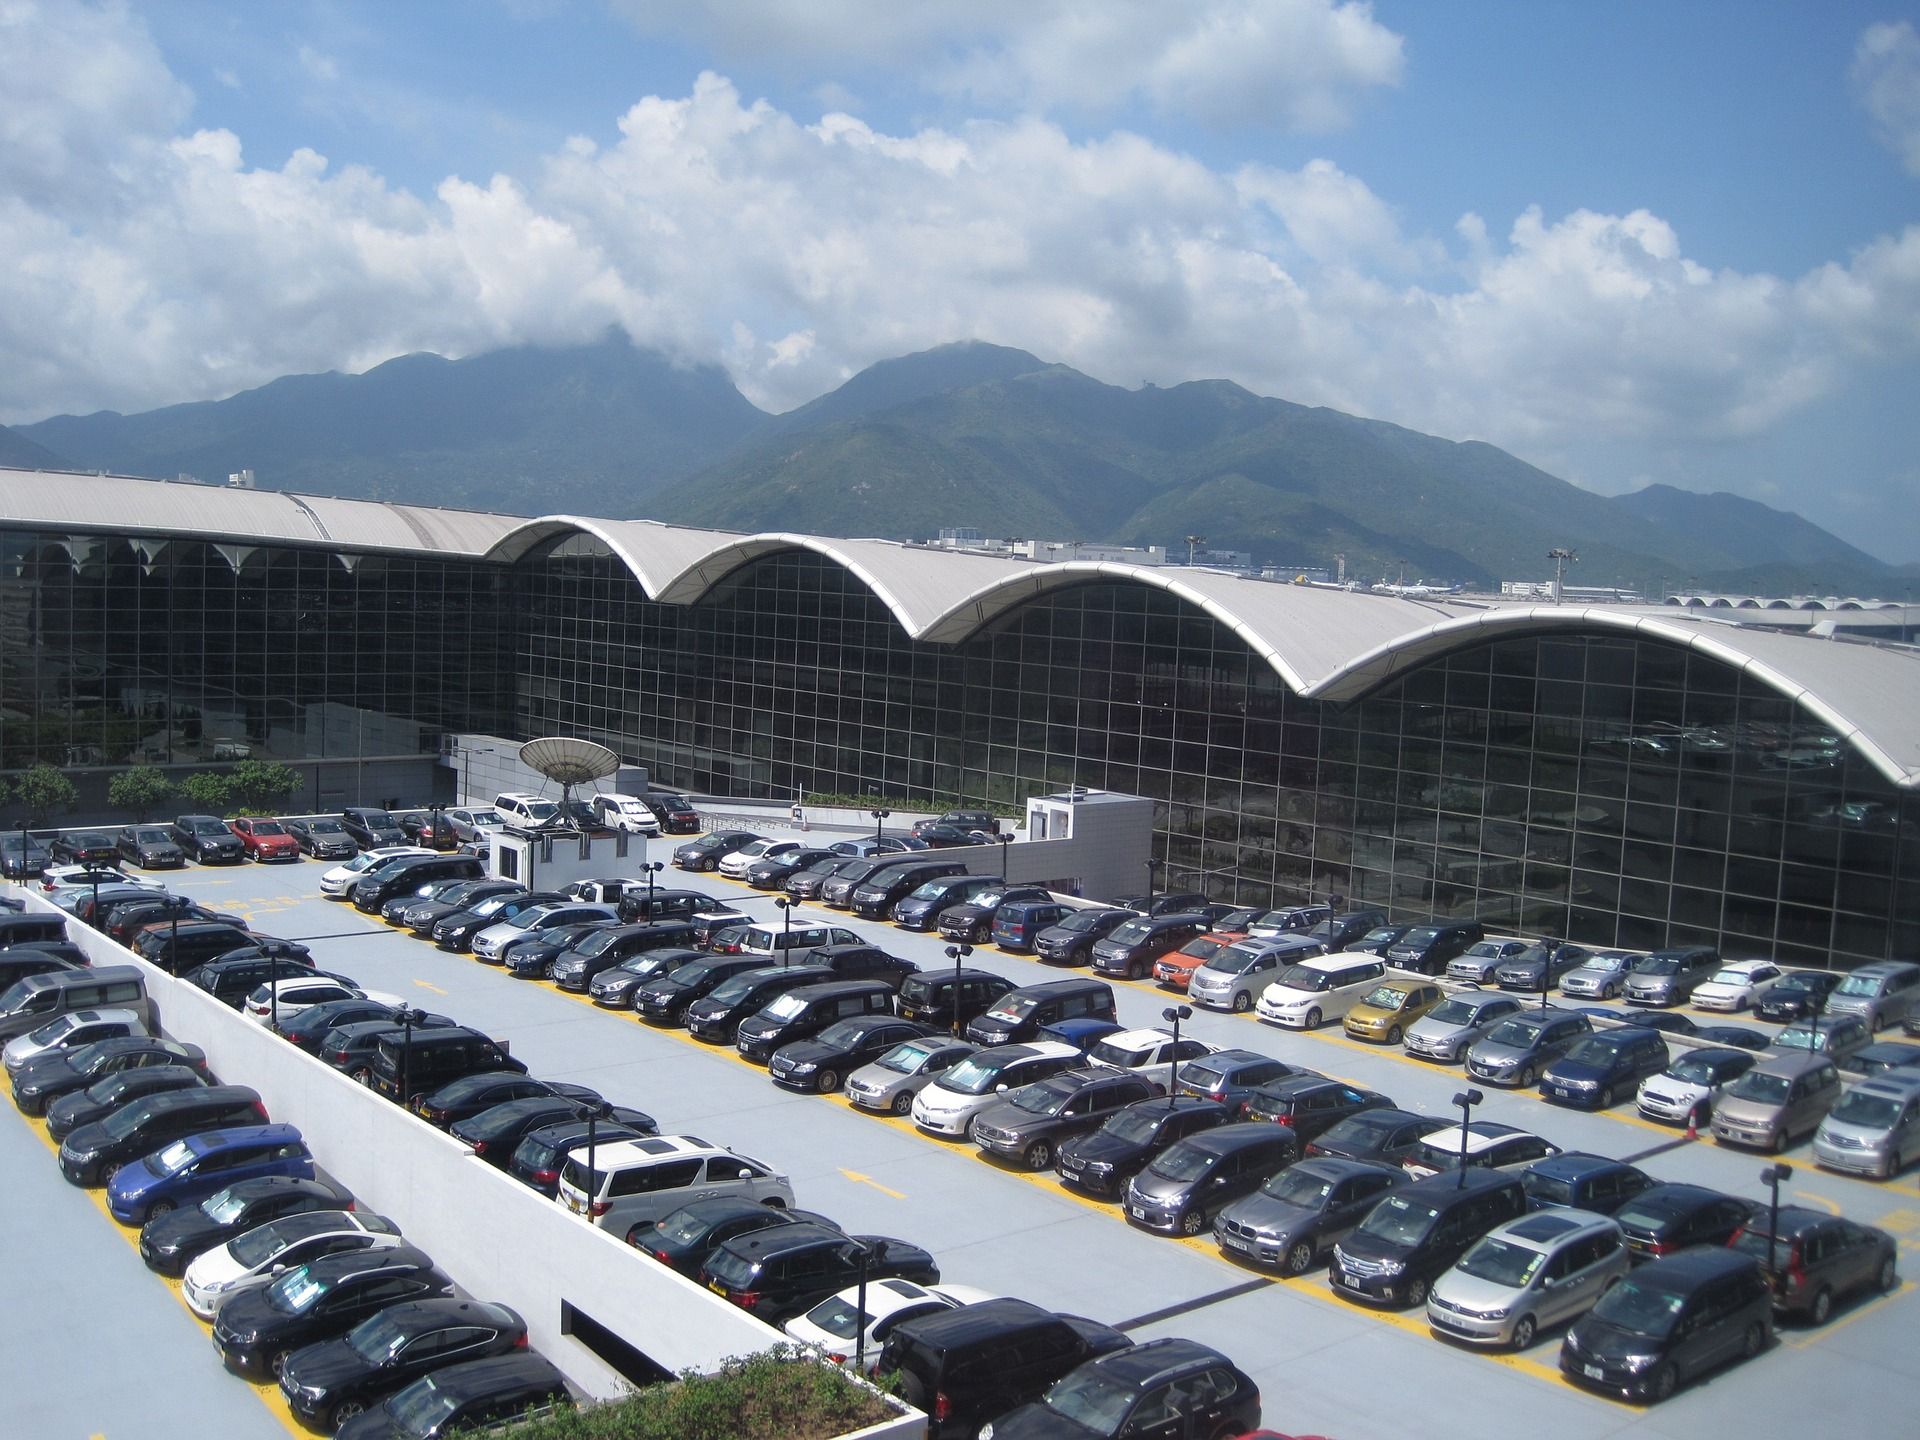 View of the parking lot at Hong Kong International Airport.